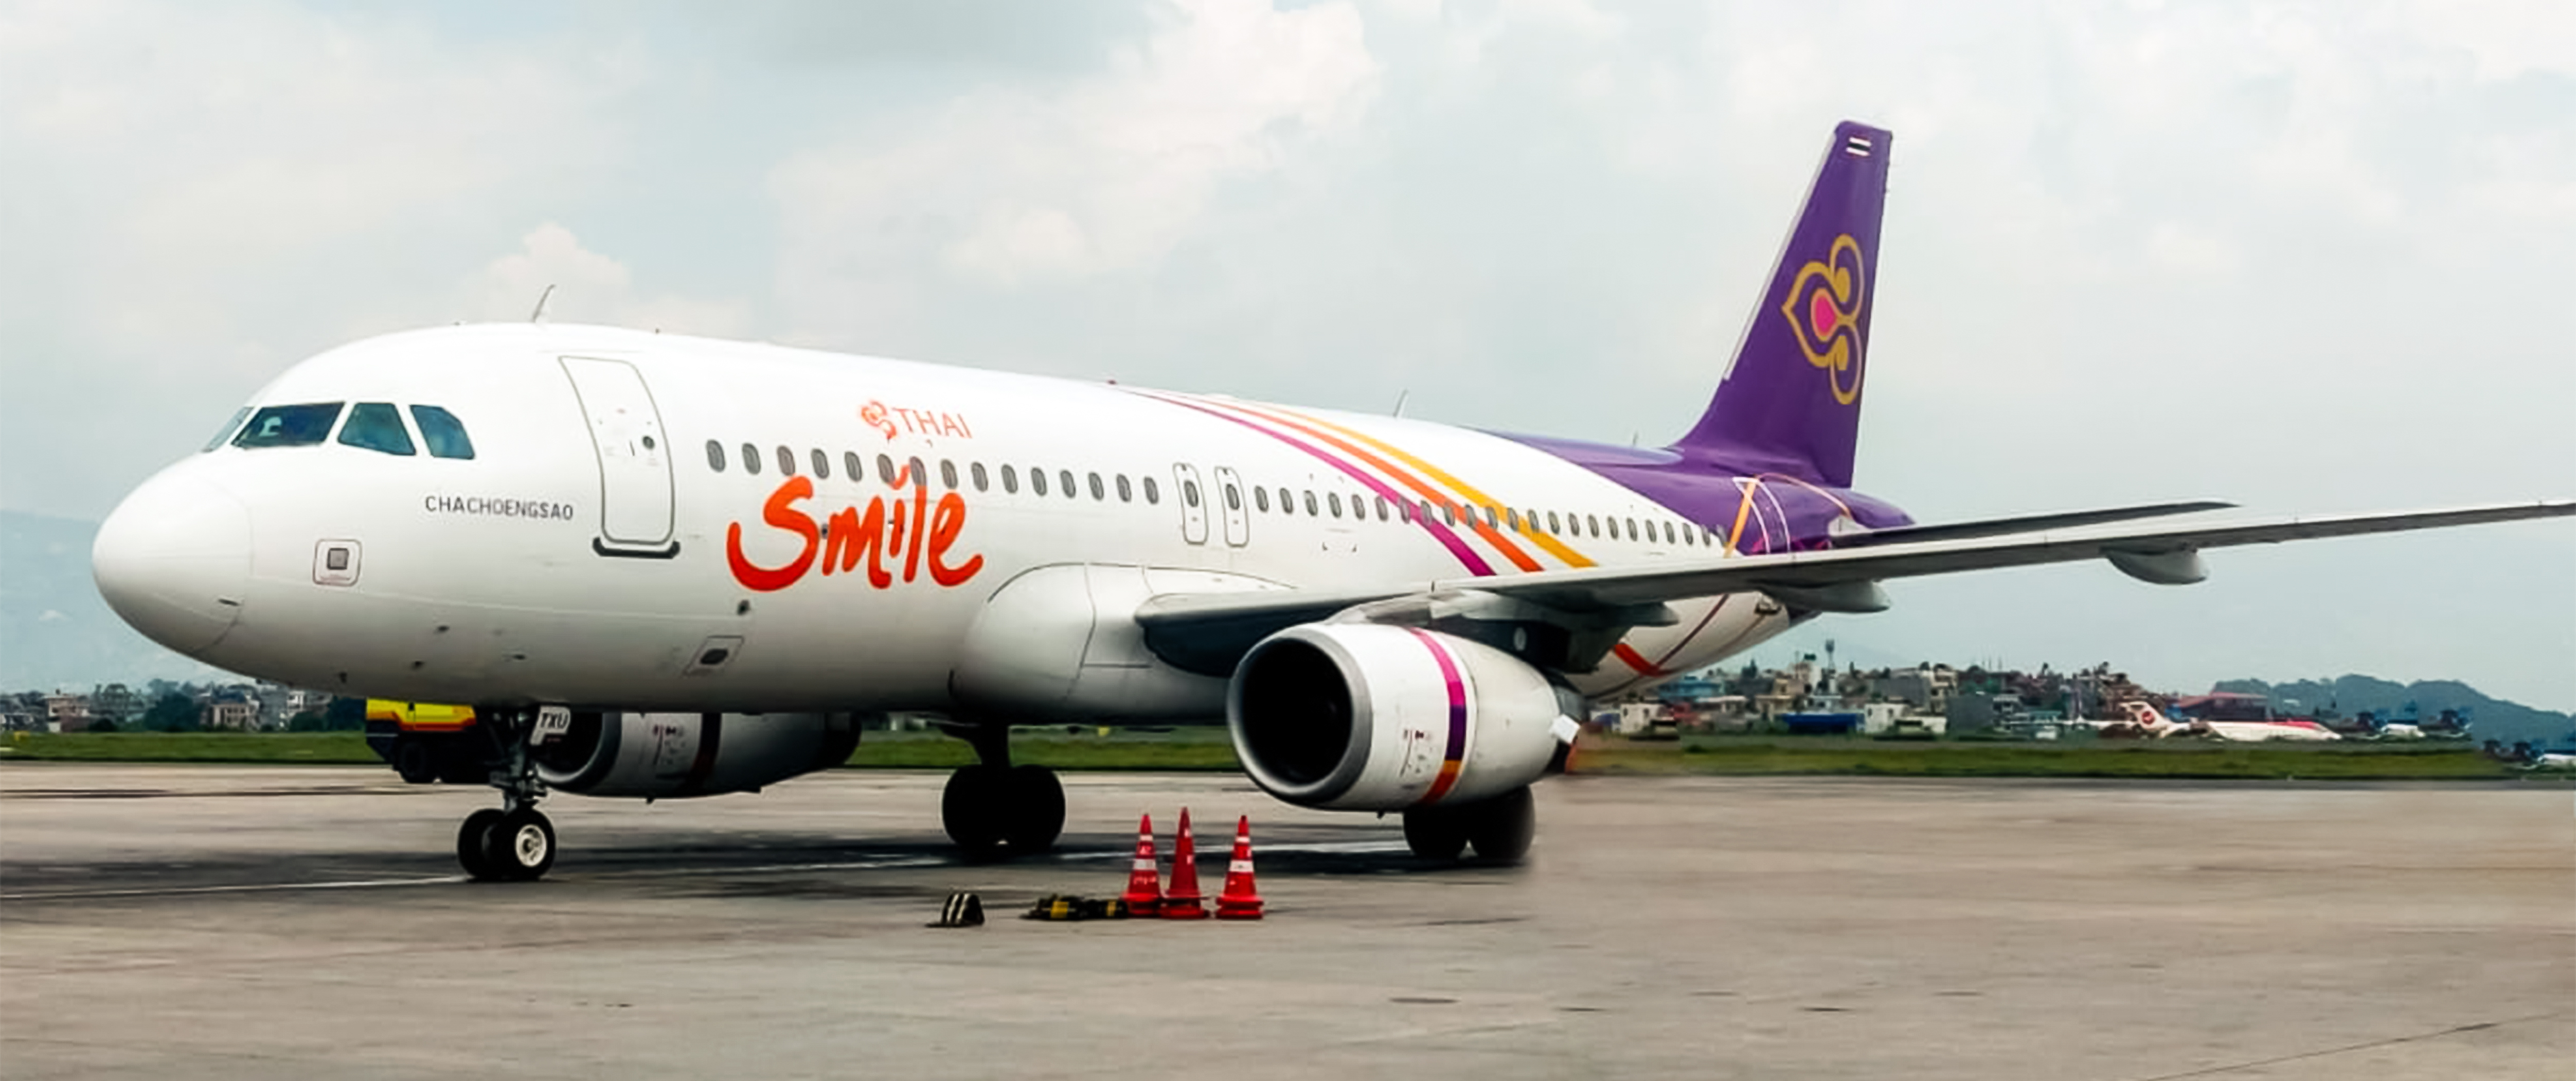 थाई स्माइलको काठमाडौँ–बैङ्कक उडान शुरु